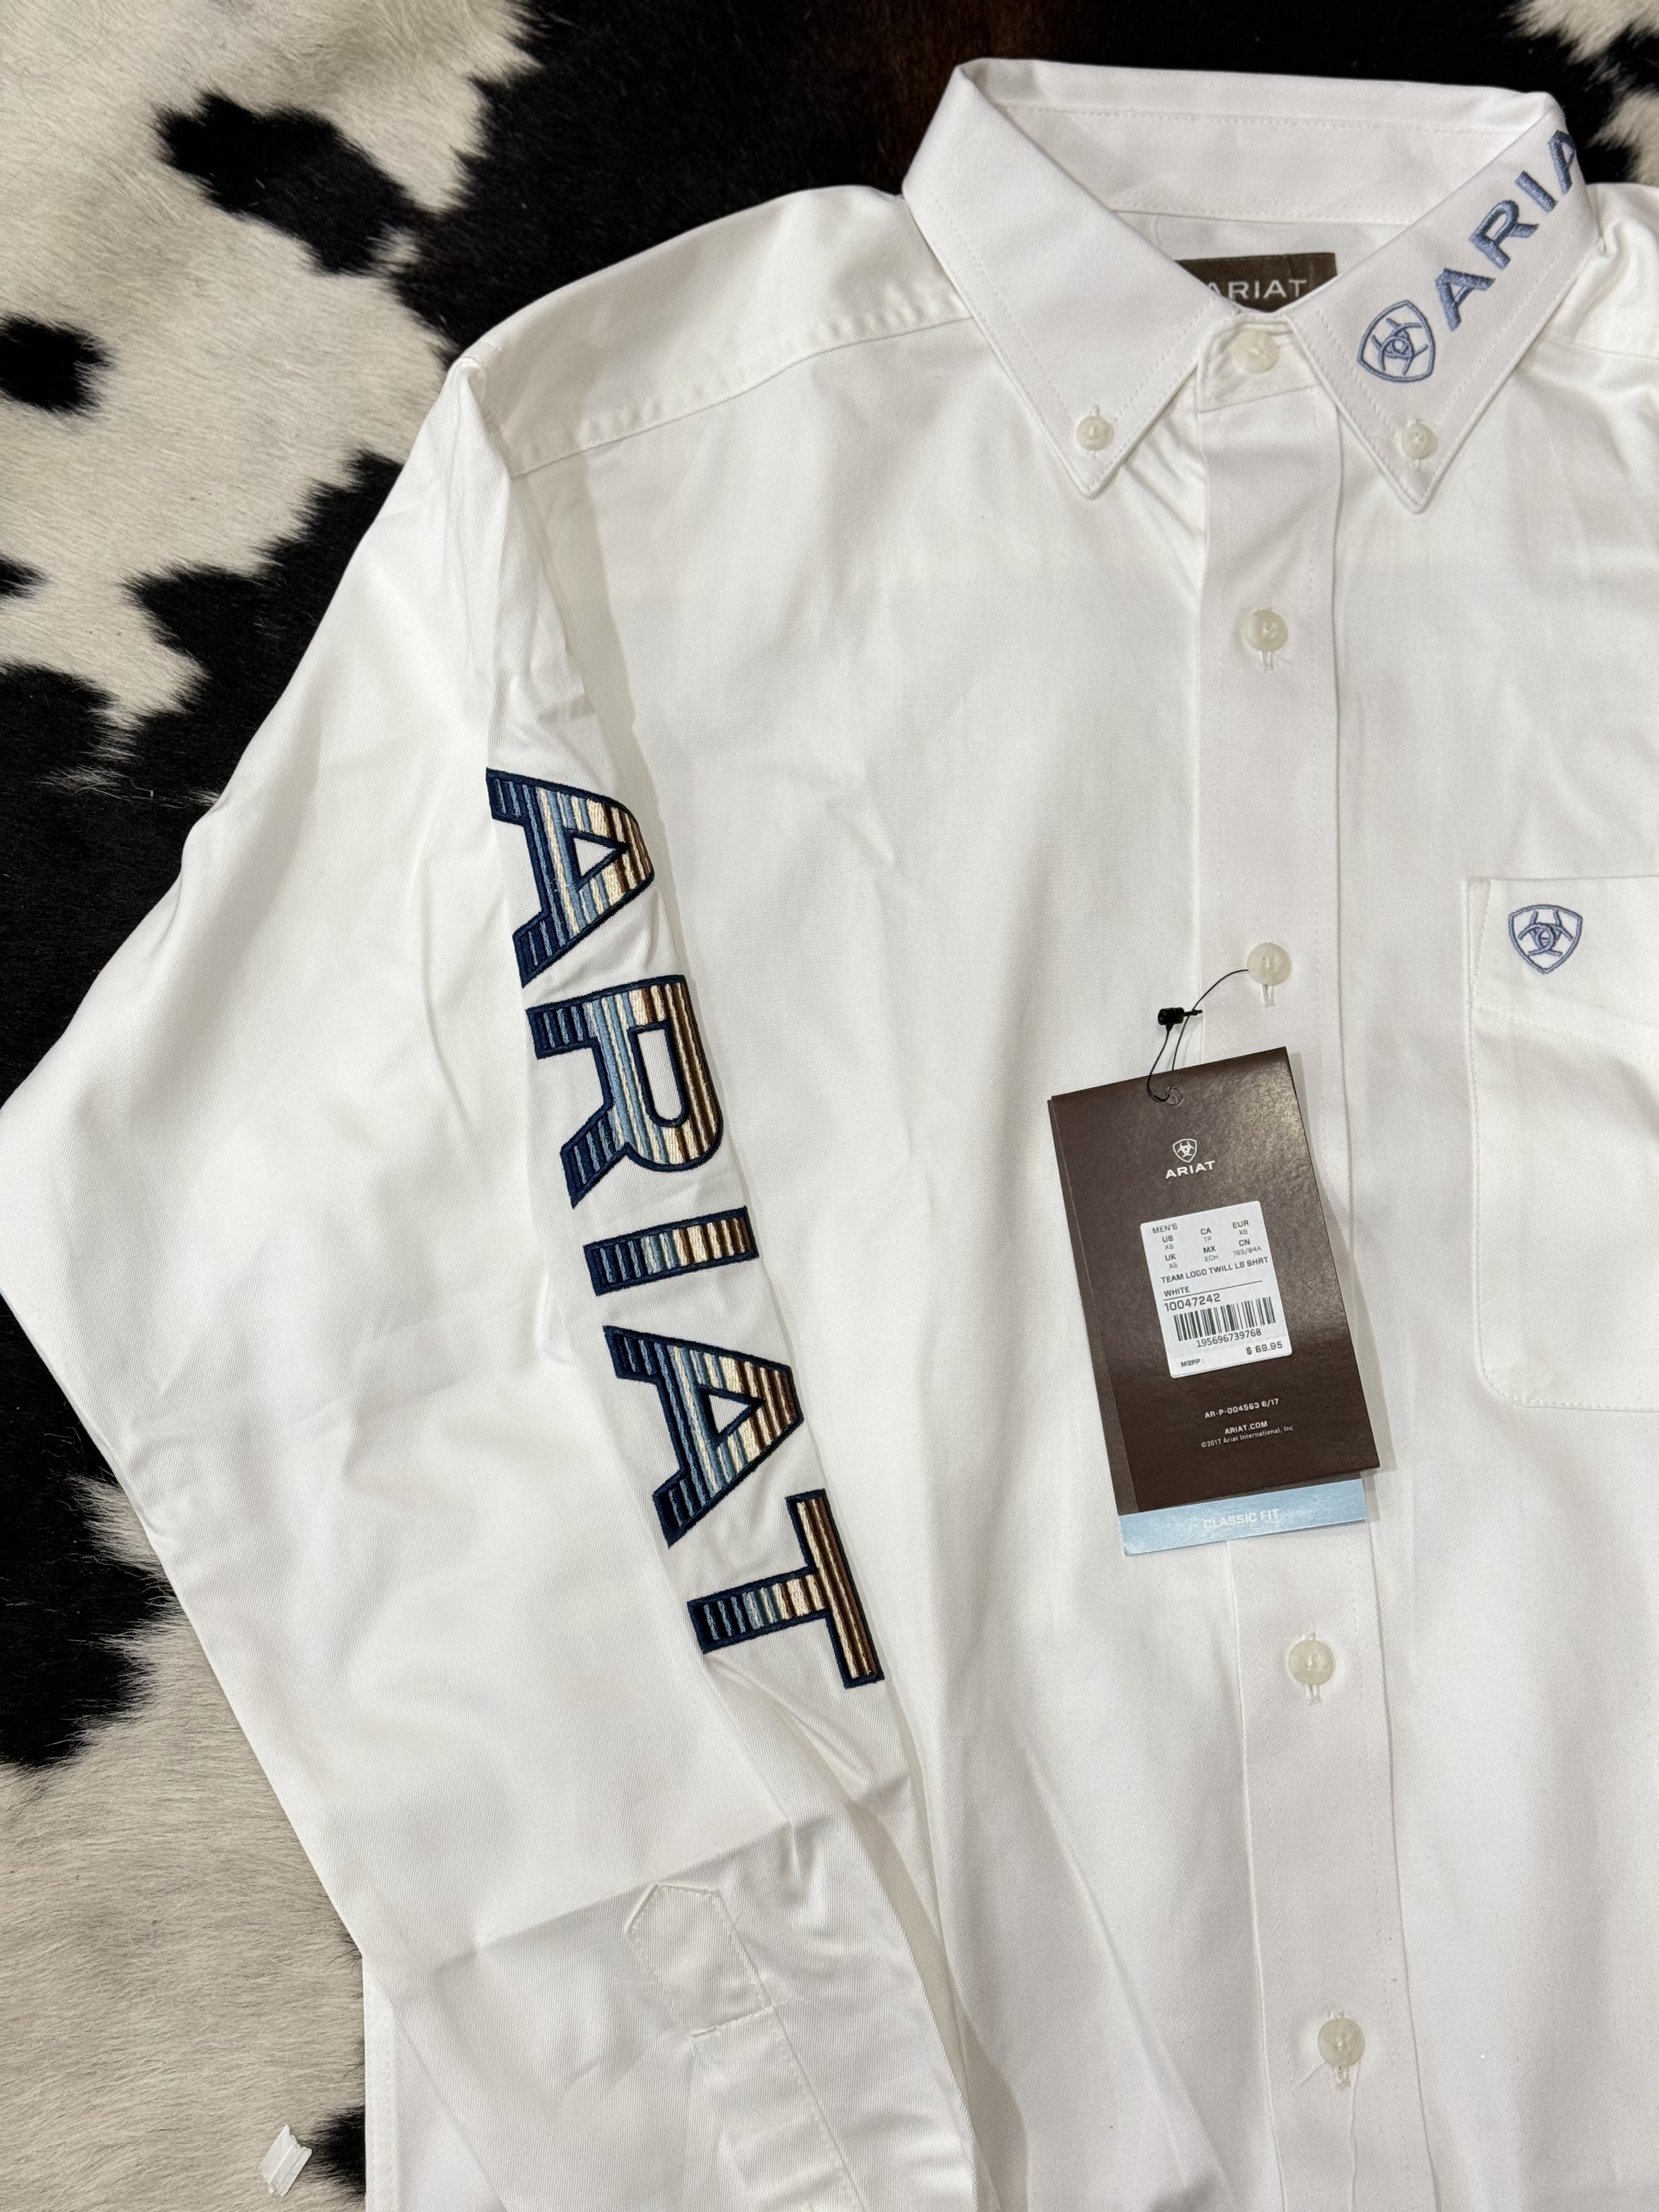 Ariat Shirt Classic White Team Logo Blue Teal 10047242